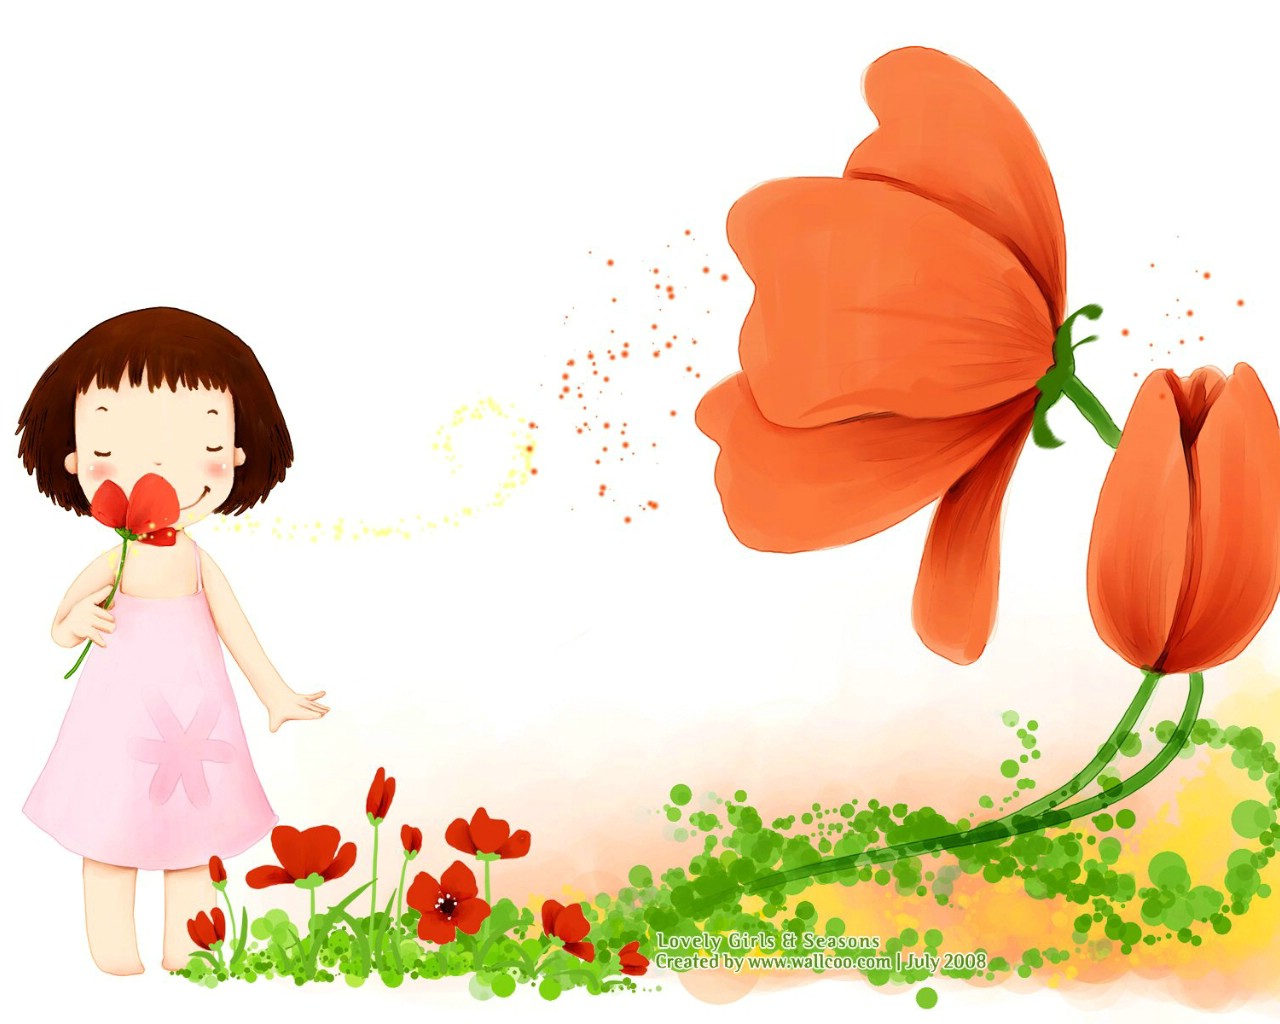 壁纸1280×1024韩国卡通小女孩插画壁纸,韩国儿童插画-可爱小女孩壁纸图片-插画壁纸-插画图片素材-桌面壁纸